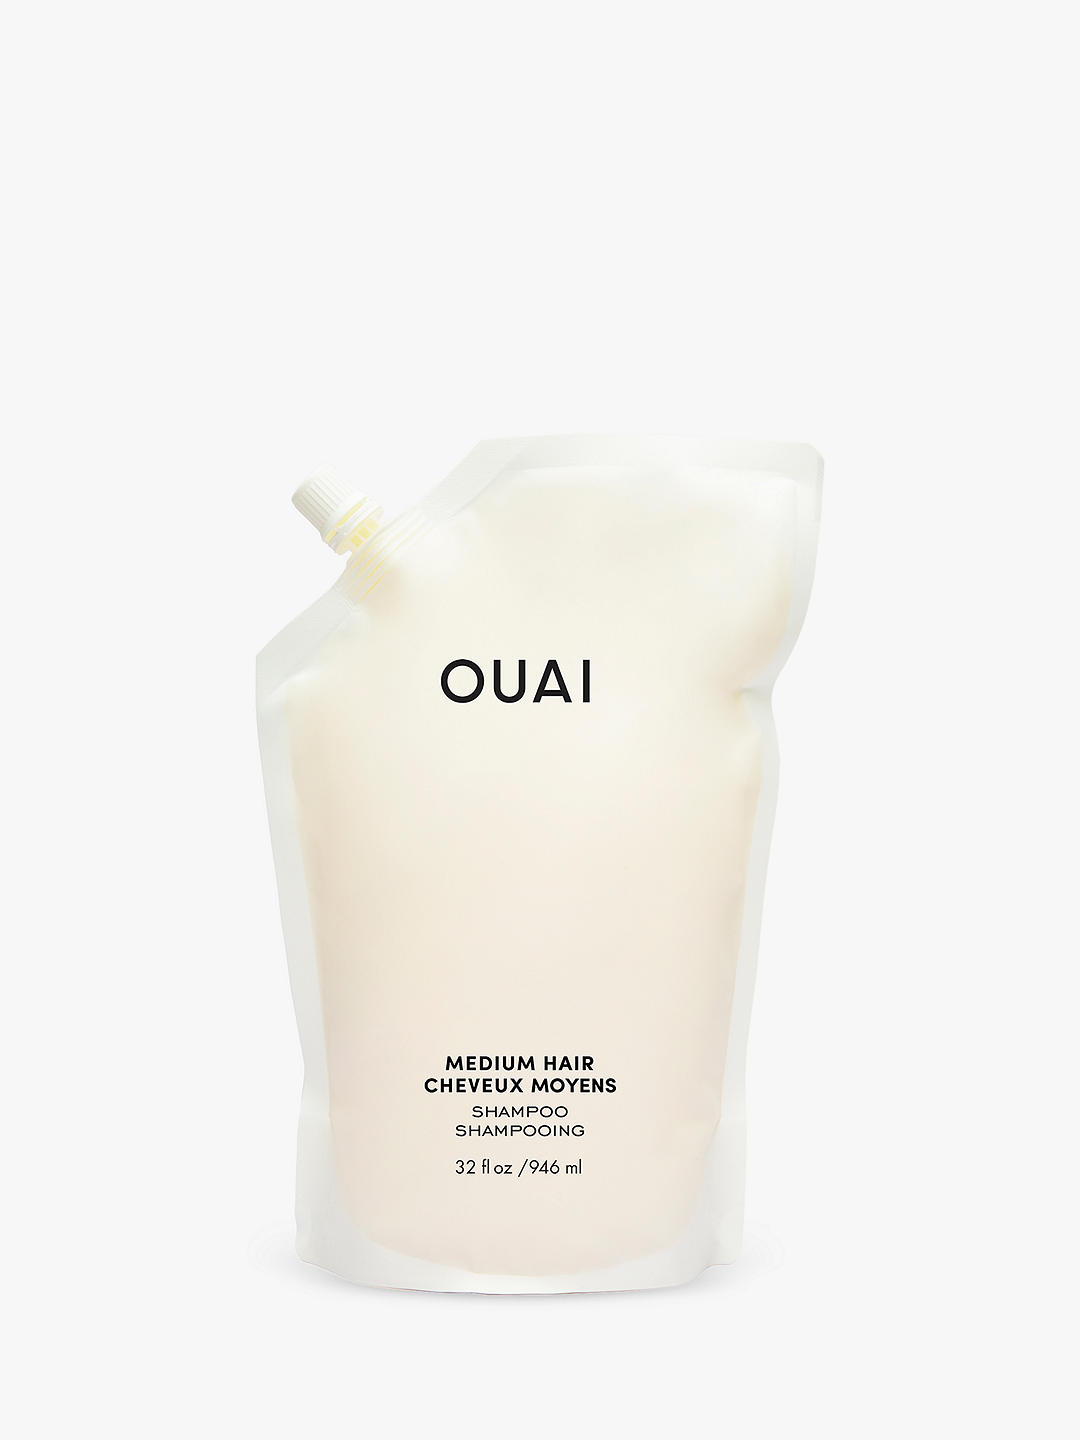 OUAI Medium Hair Shampoo Refill, 946ml 1